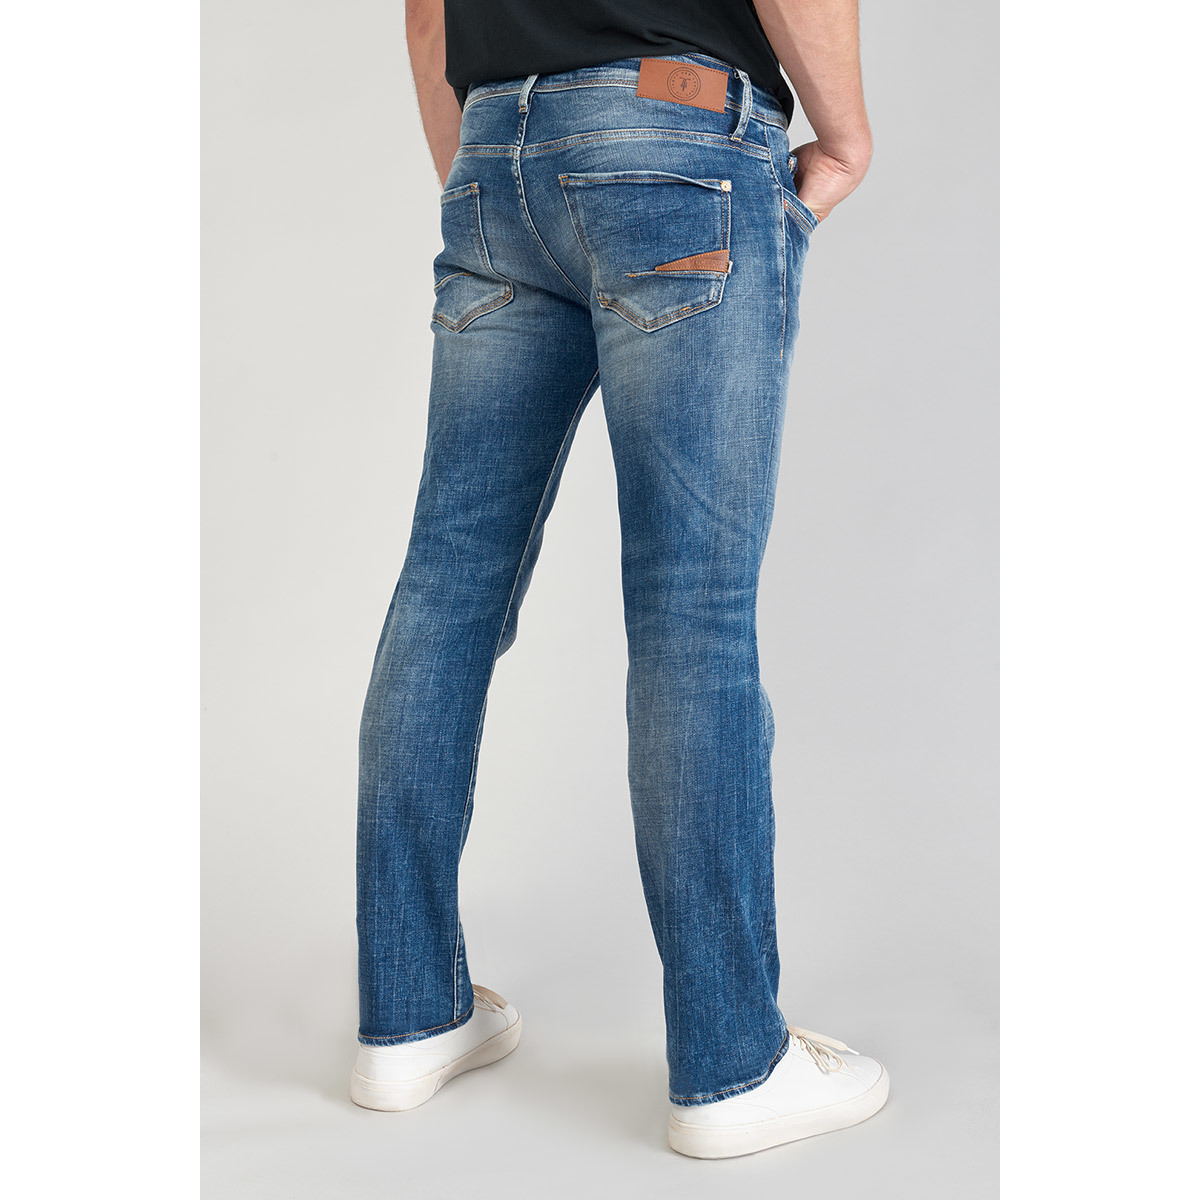 Le Temps des Cerises Bleu Hodoul 800/12 regular jeans bleu S6h5tHm6